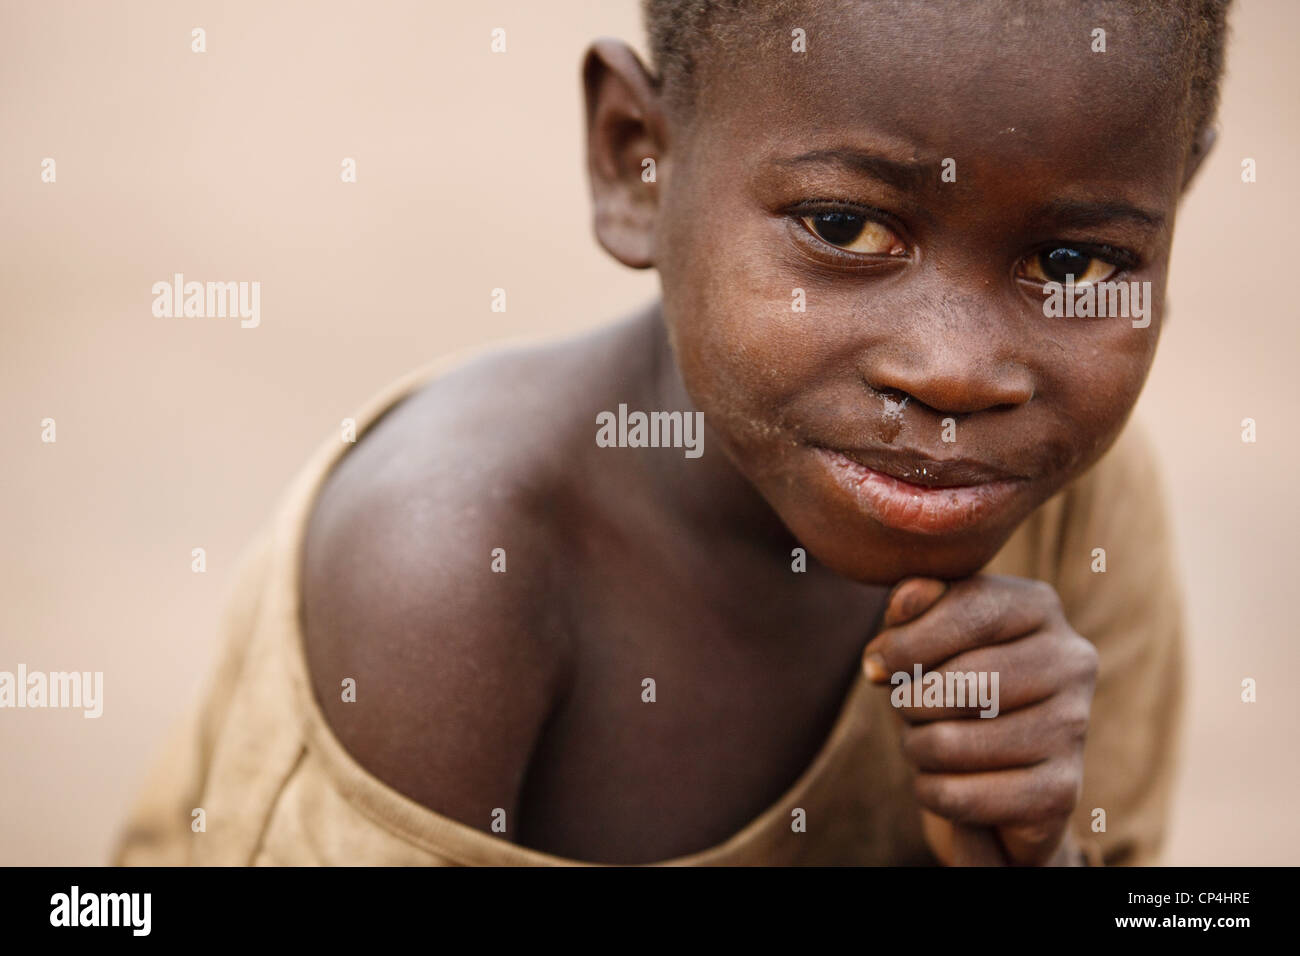 Retrato de un joven en el campamento de desplazados internos Miketo, provincia de Katanga, en la República Democrática del Congo el domingo, 19 de febrero de 2012. Foto de stock